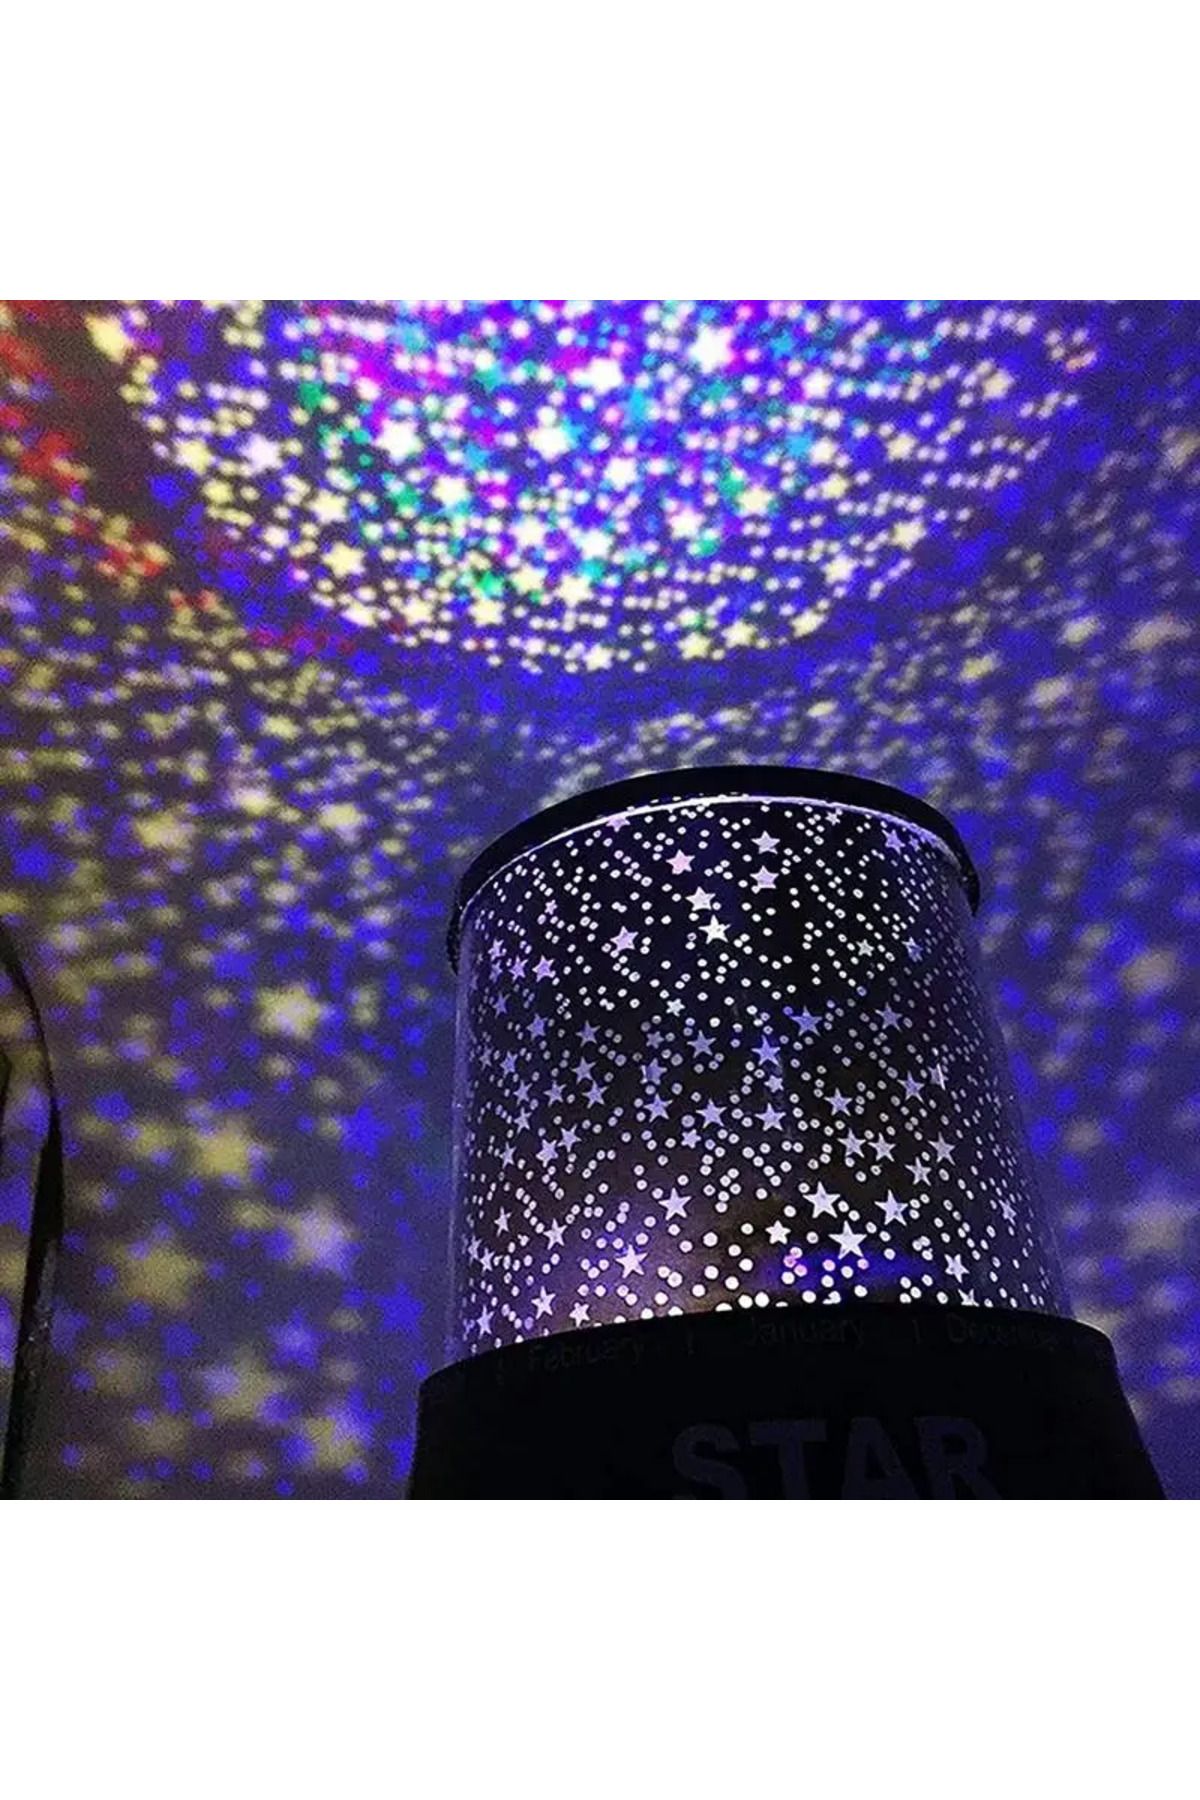 Genel Markalar Gece Lambası Renkli Yıldızlı Gökyüzü Projeksiyon Yansıtmalı Çocuk Bebek Odası Lamba